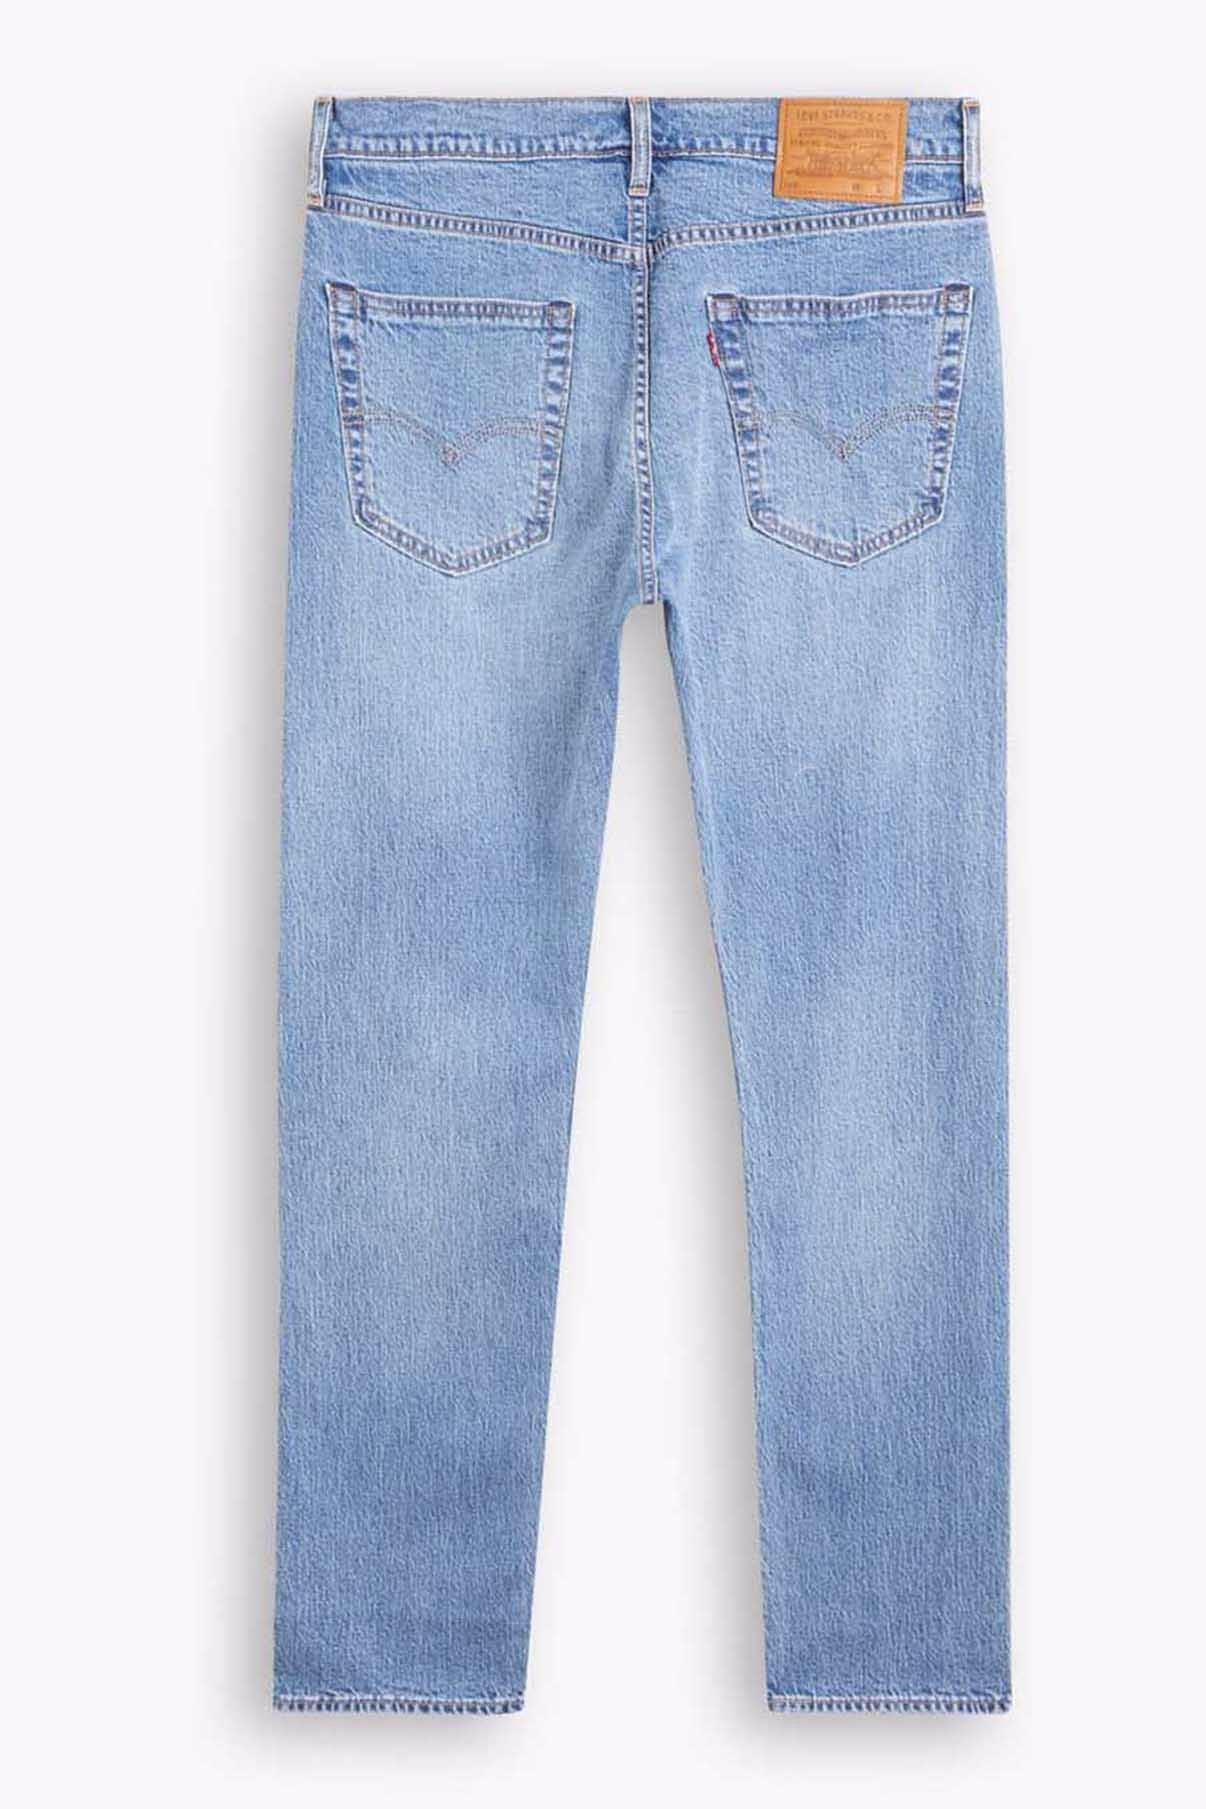 LEVIS MEN Jeans 502 Taper Medium Indigo